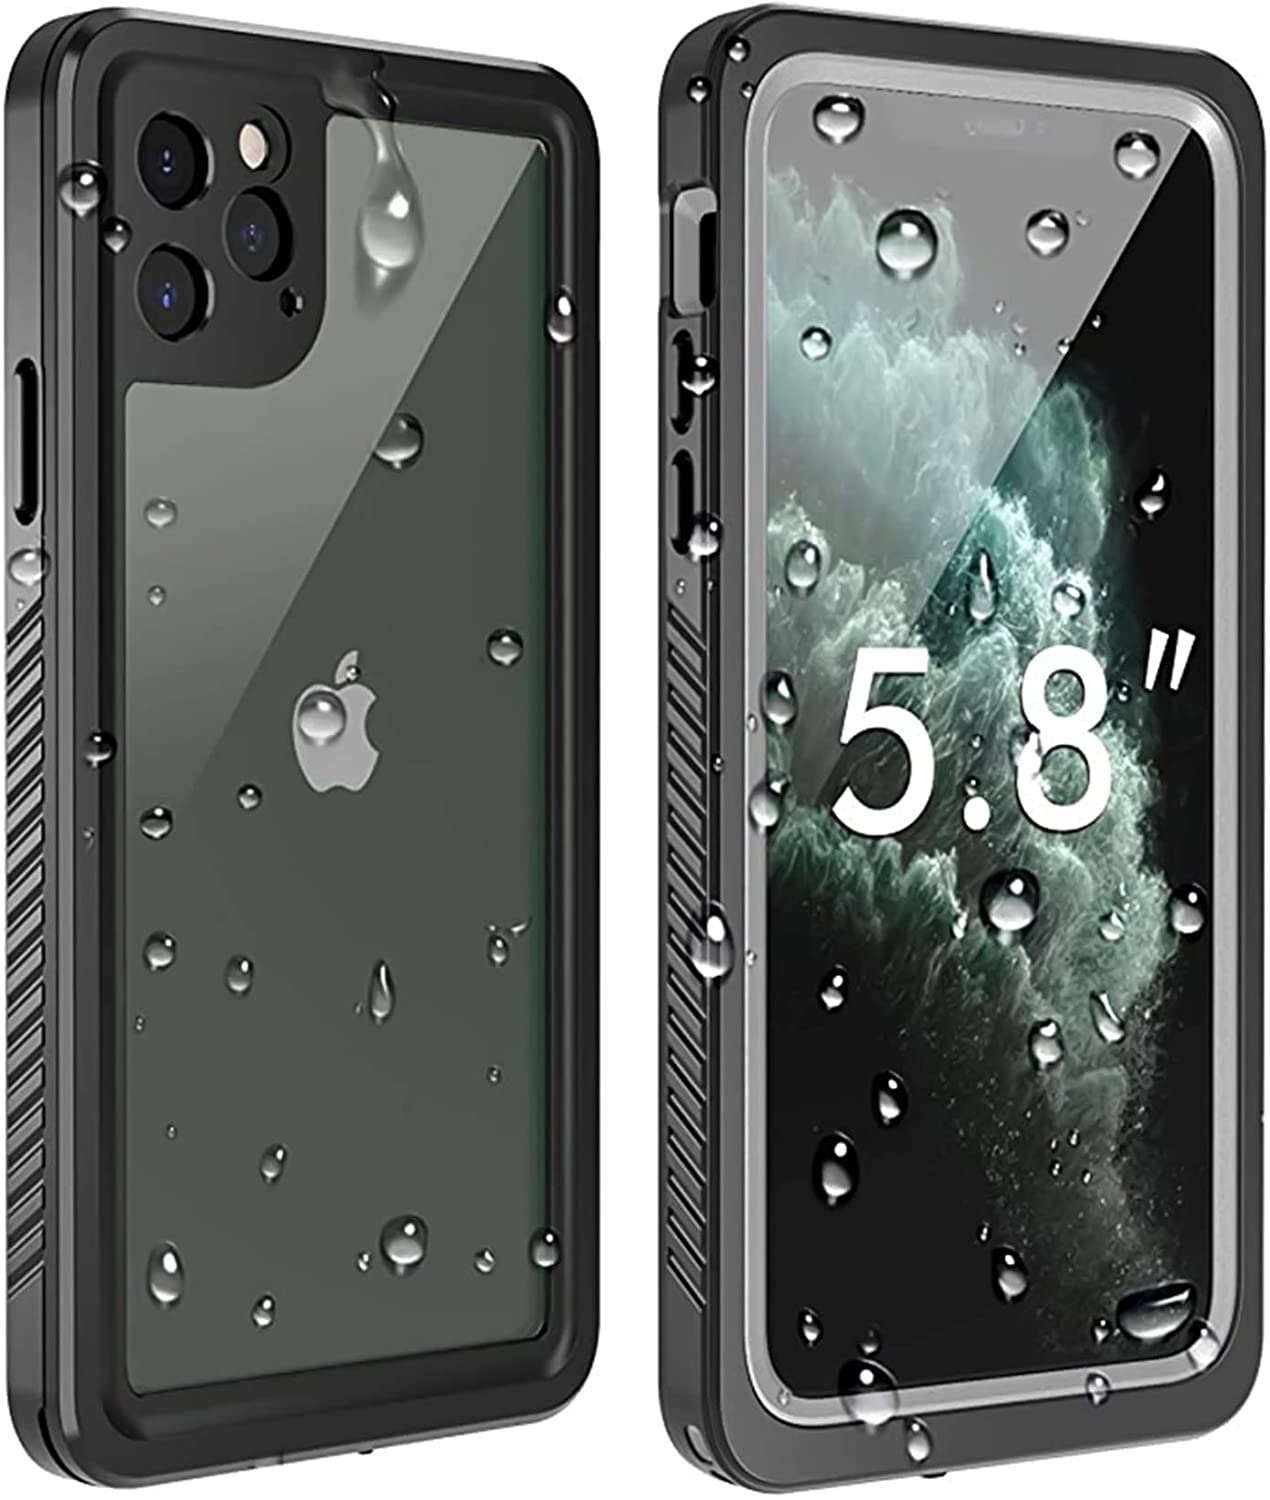 Temdan Iphone 11 Pro Waterproof Case